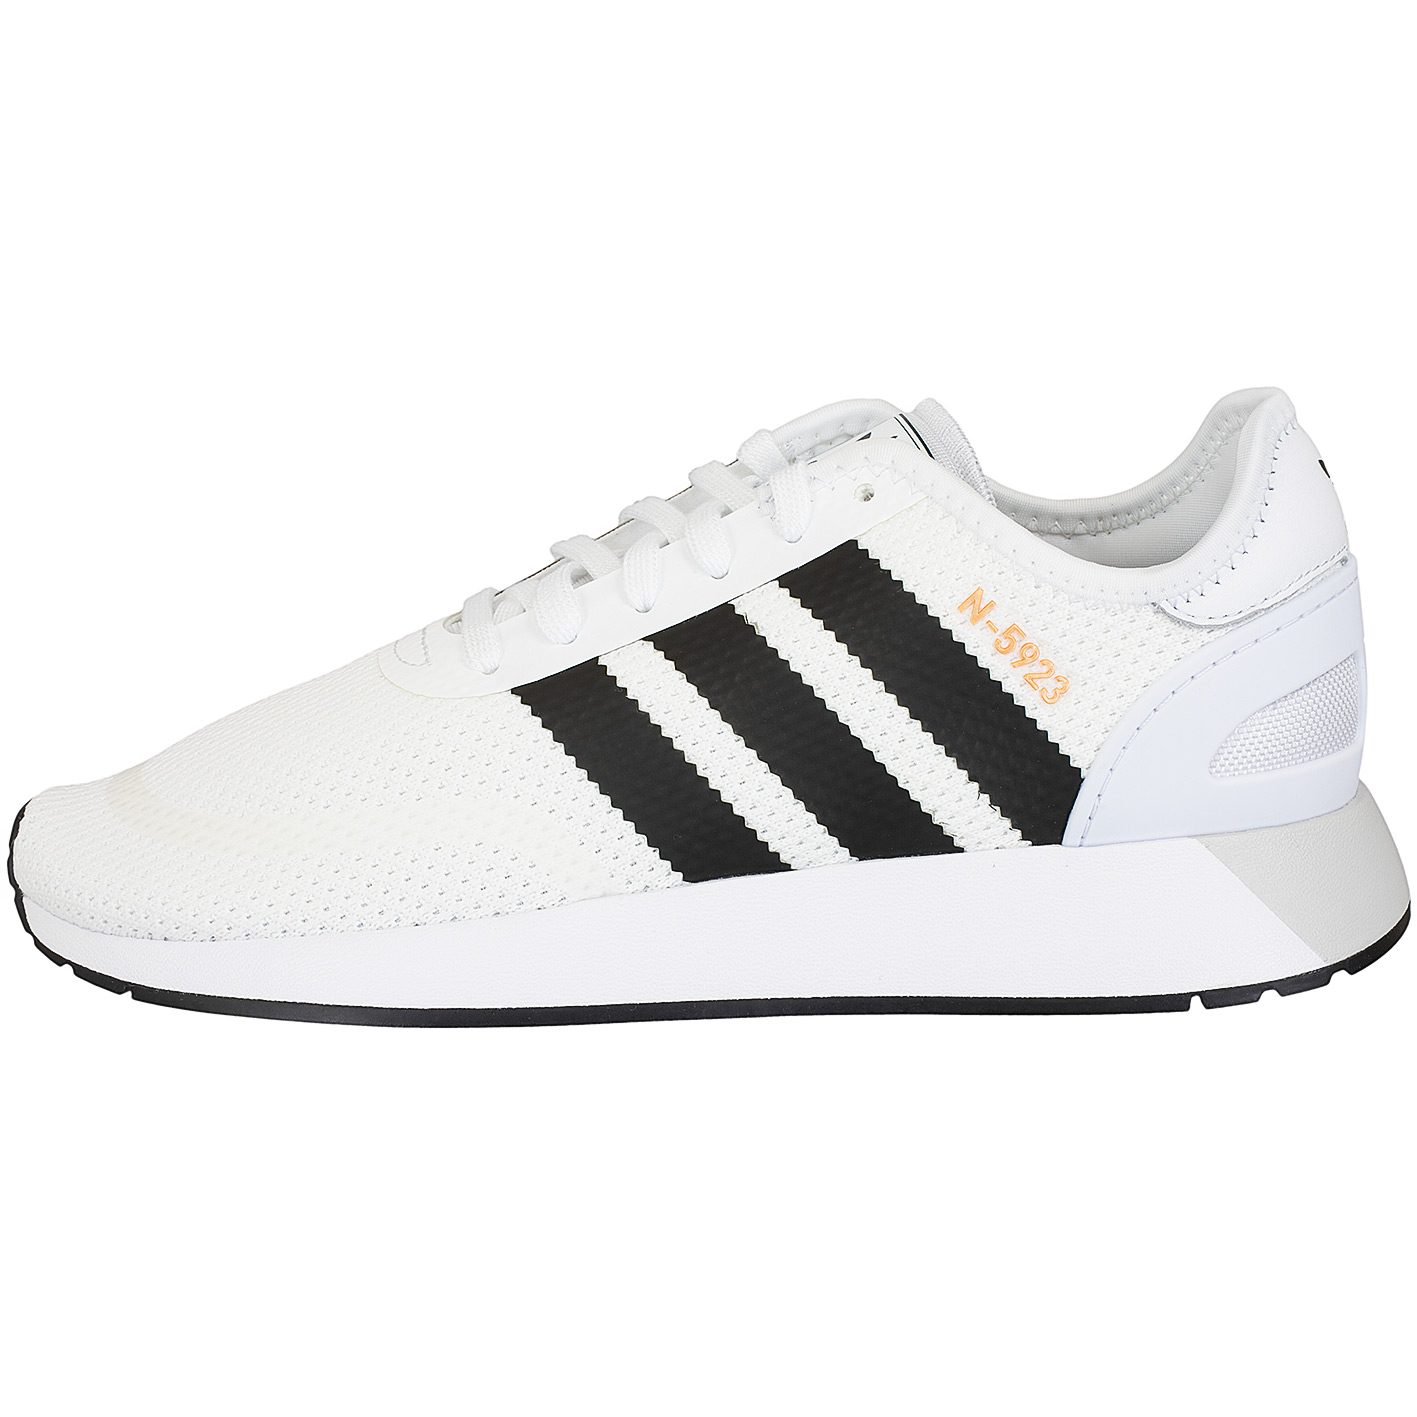 ☆ Adidas Originals Sneaker N-5923 weiß/schwarz - hier bestellen!